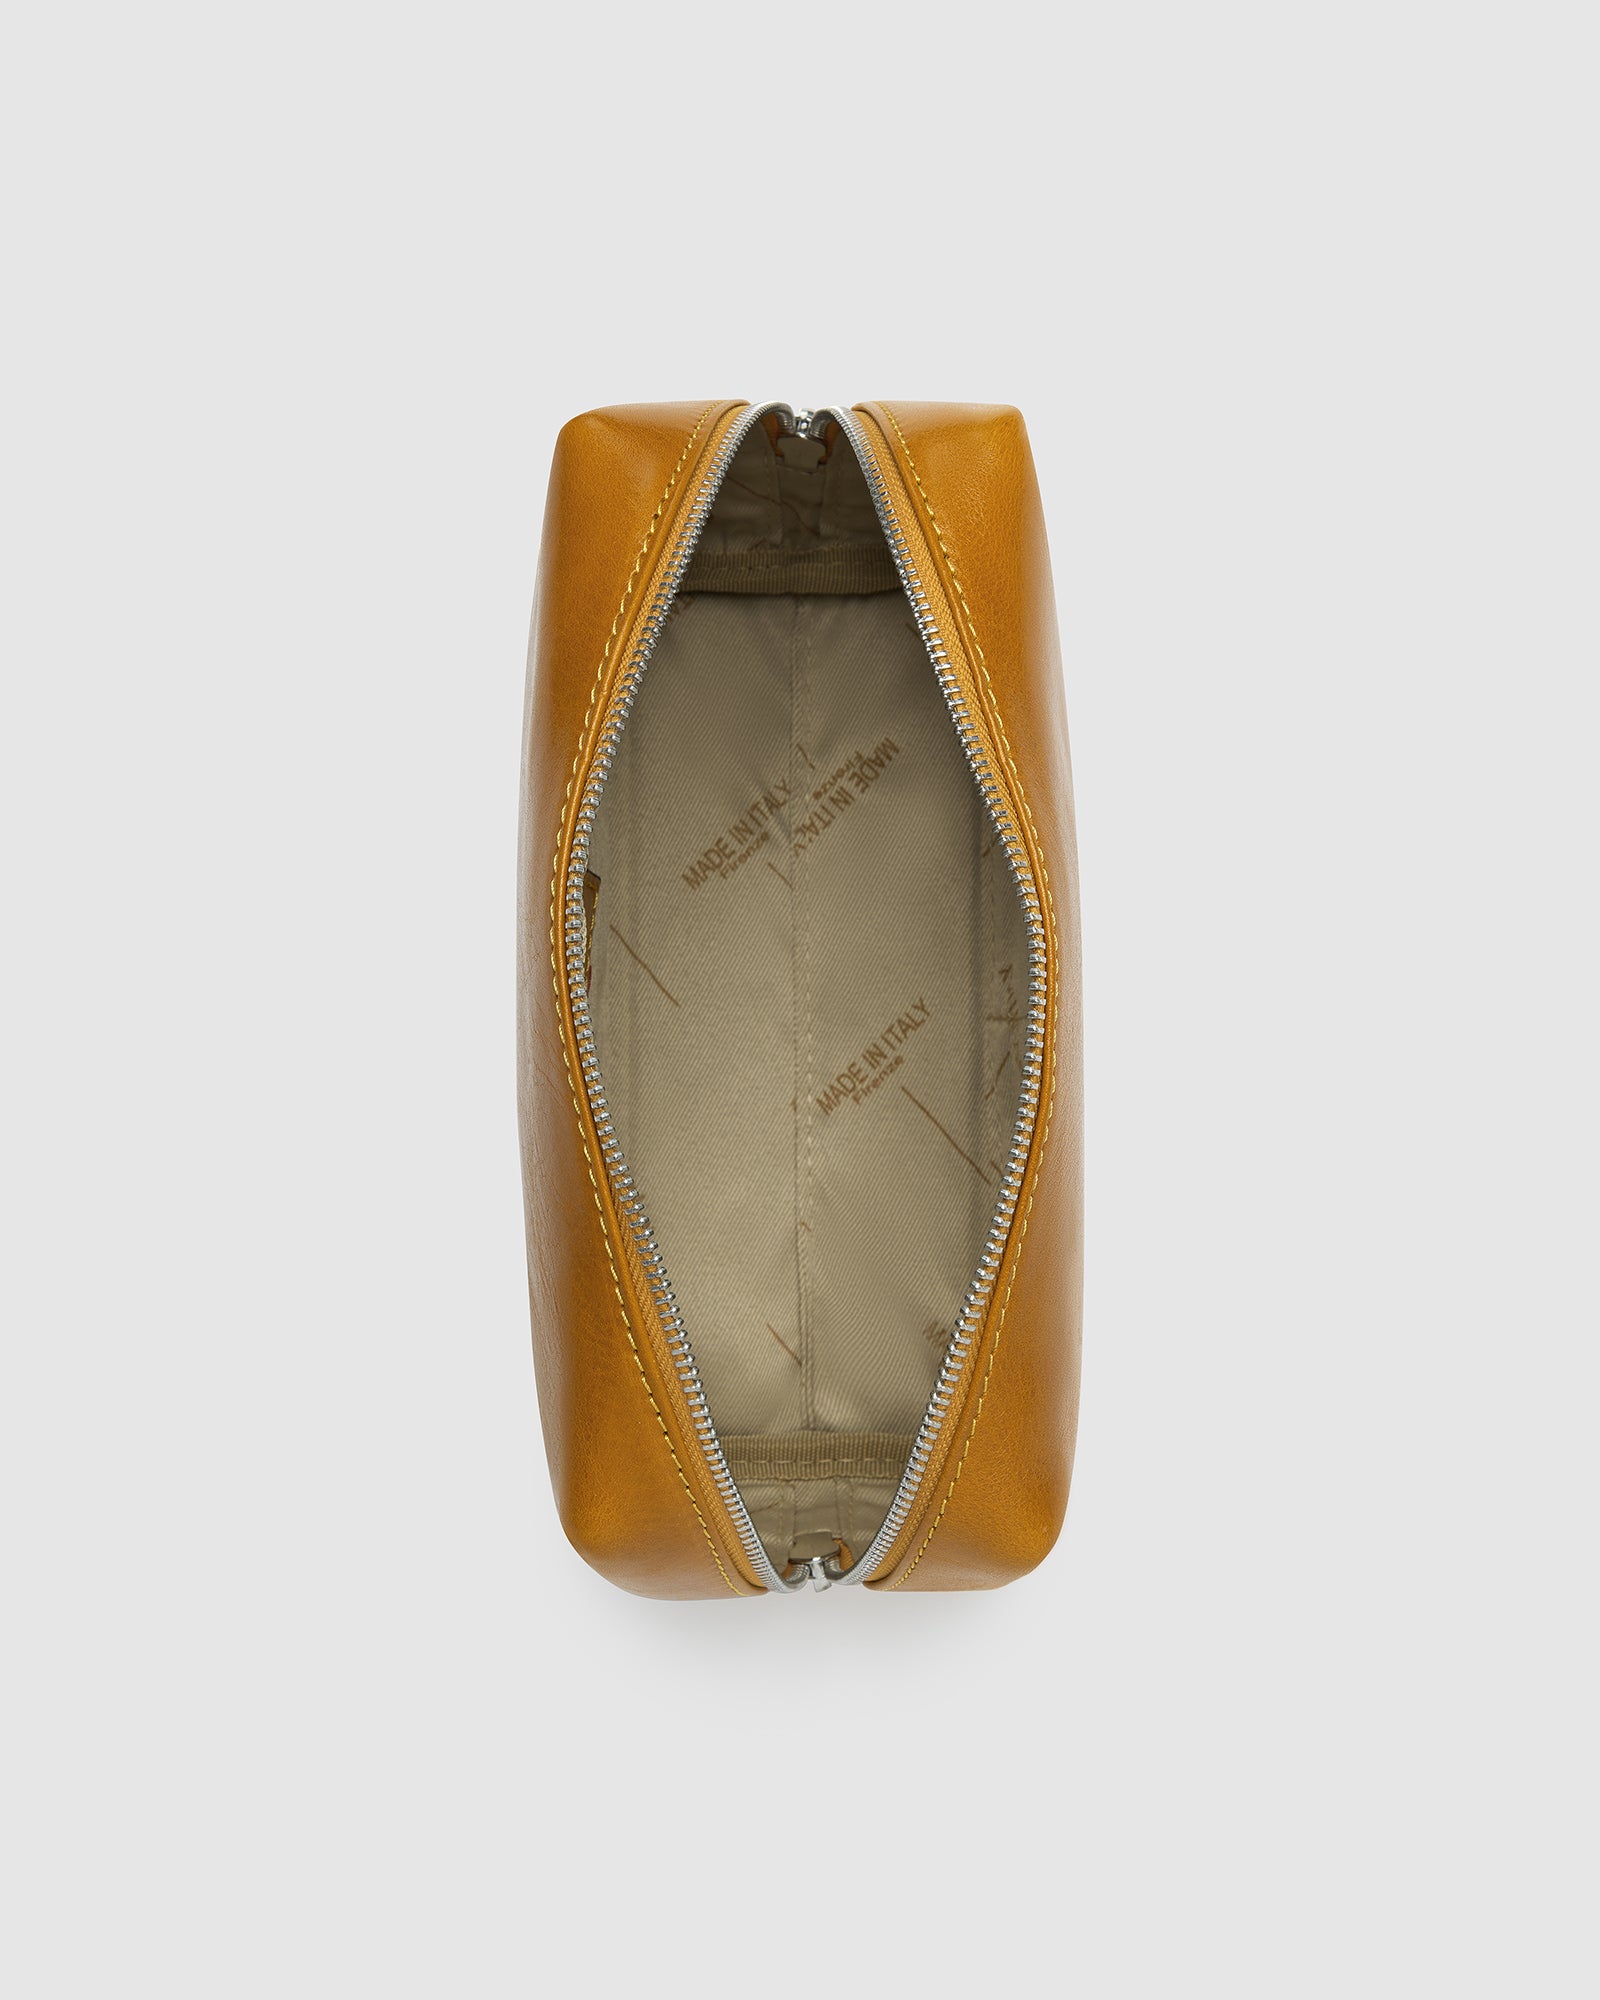 Otto Dopp Kit Yellow - Leather Toiletry Bag